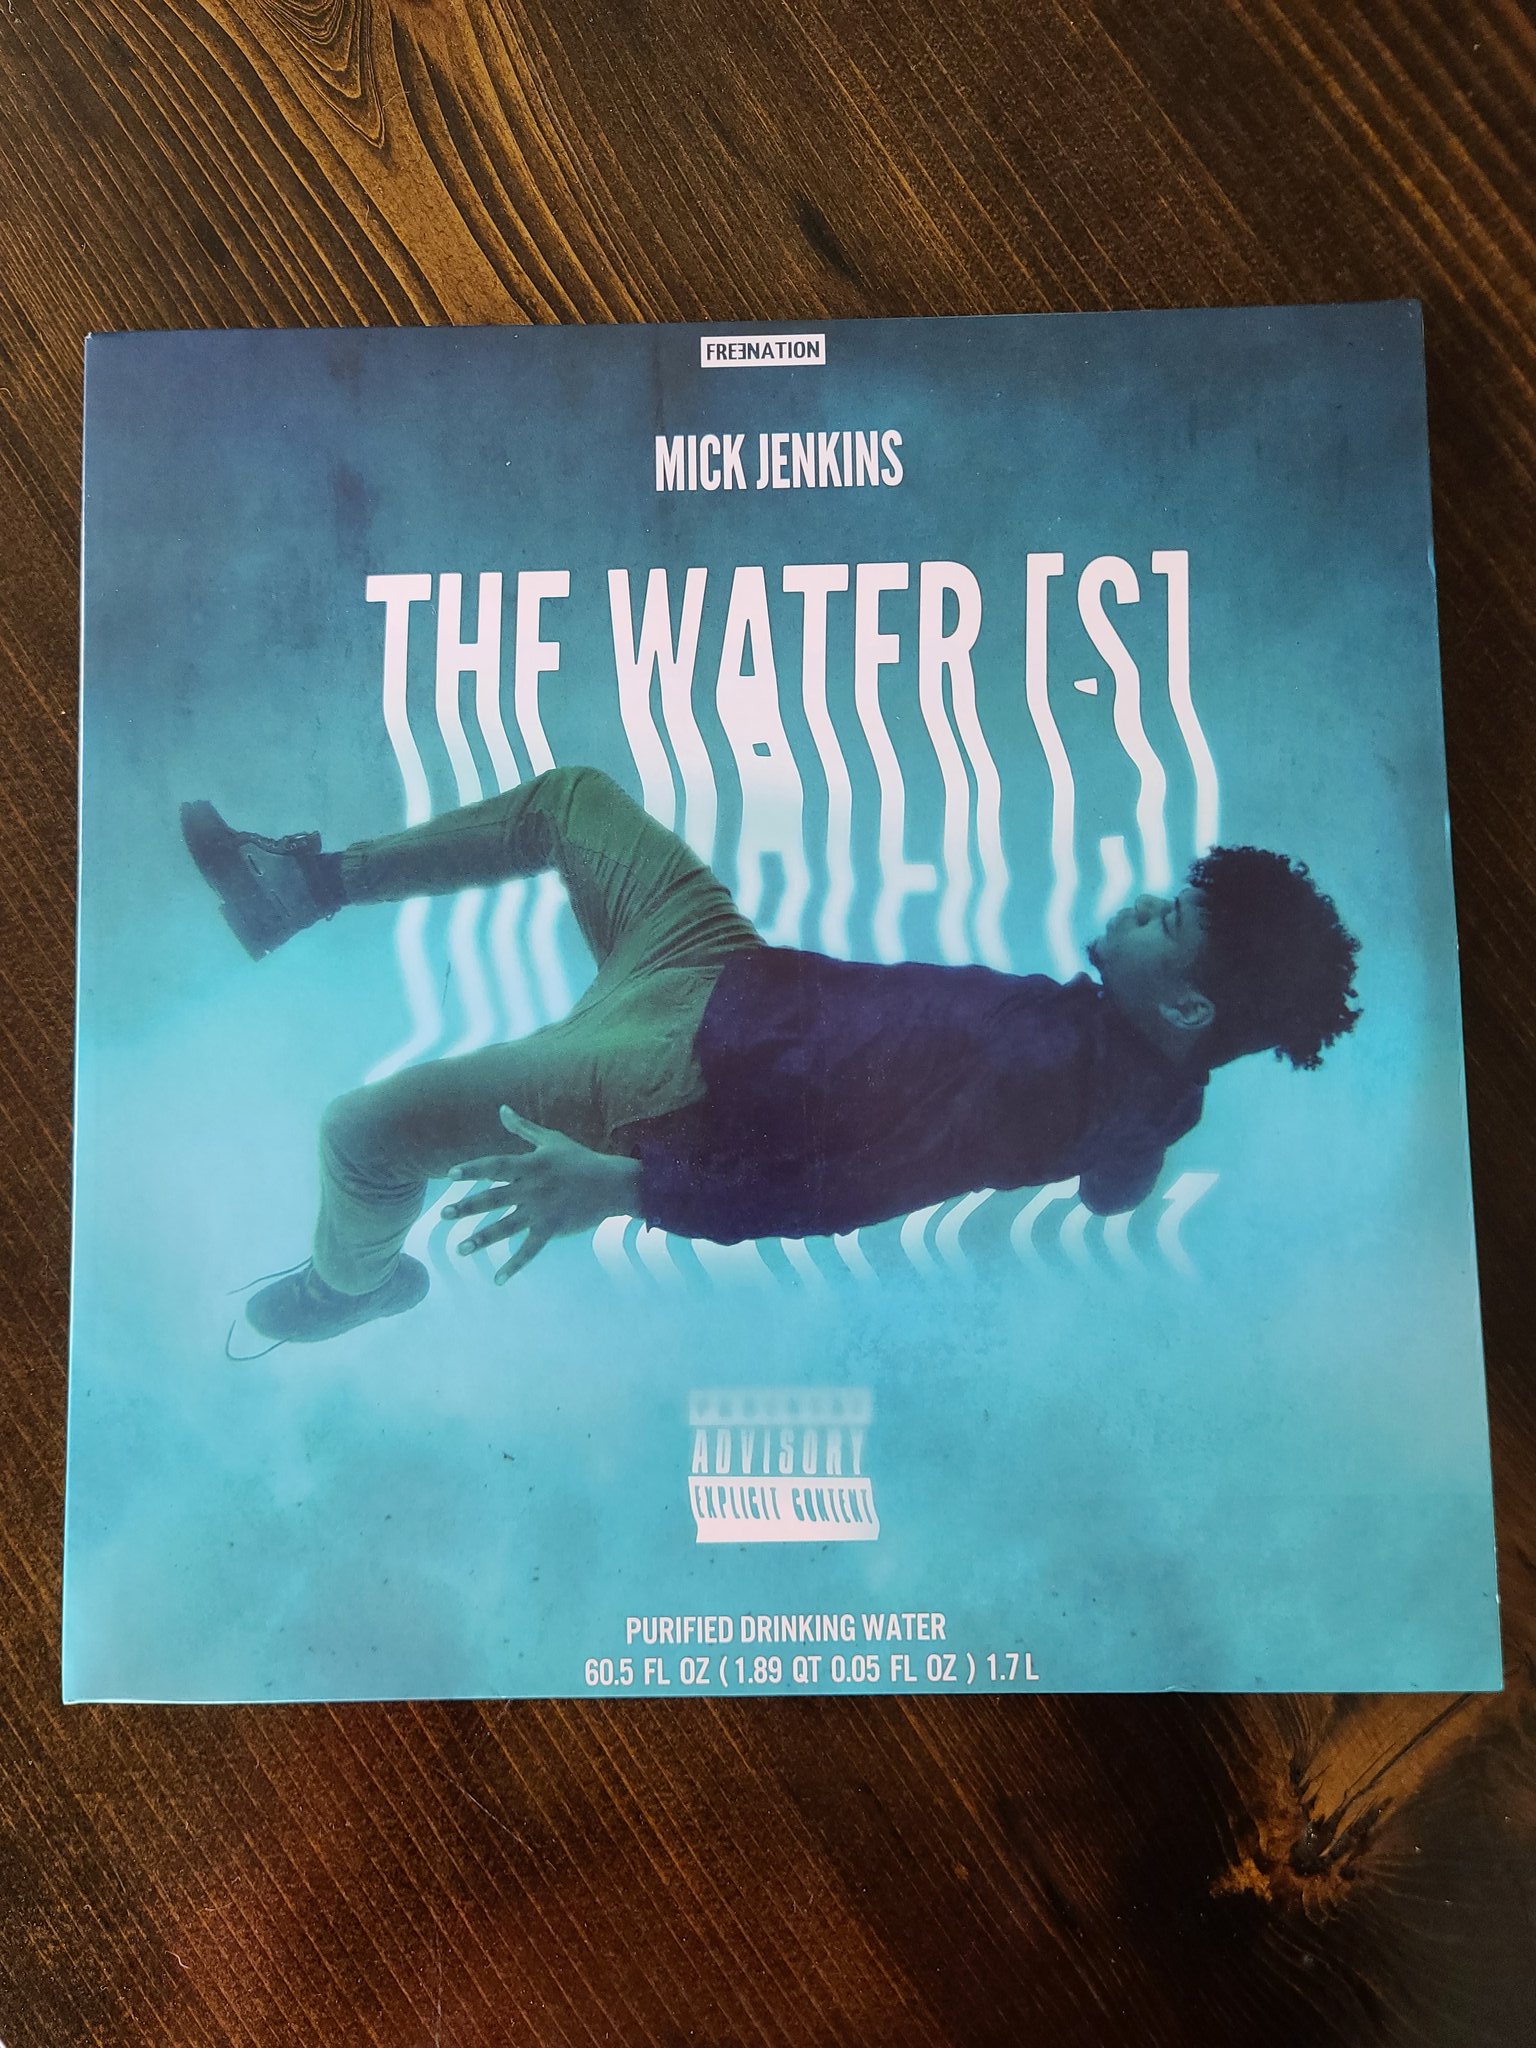 Sam Shroyer on Twitter: "Mick Jenkins The Water (S) lmtd. 1000 vinyl https://t.co/Dw5L79oK5y" / Twitter